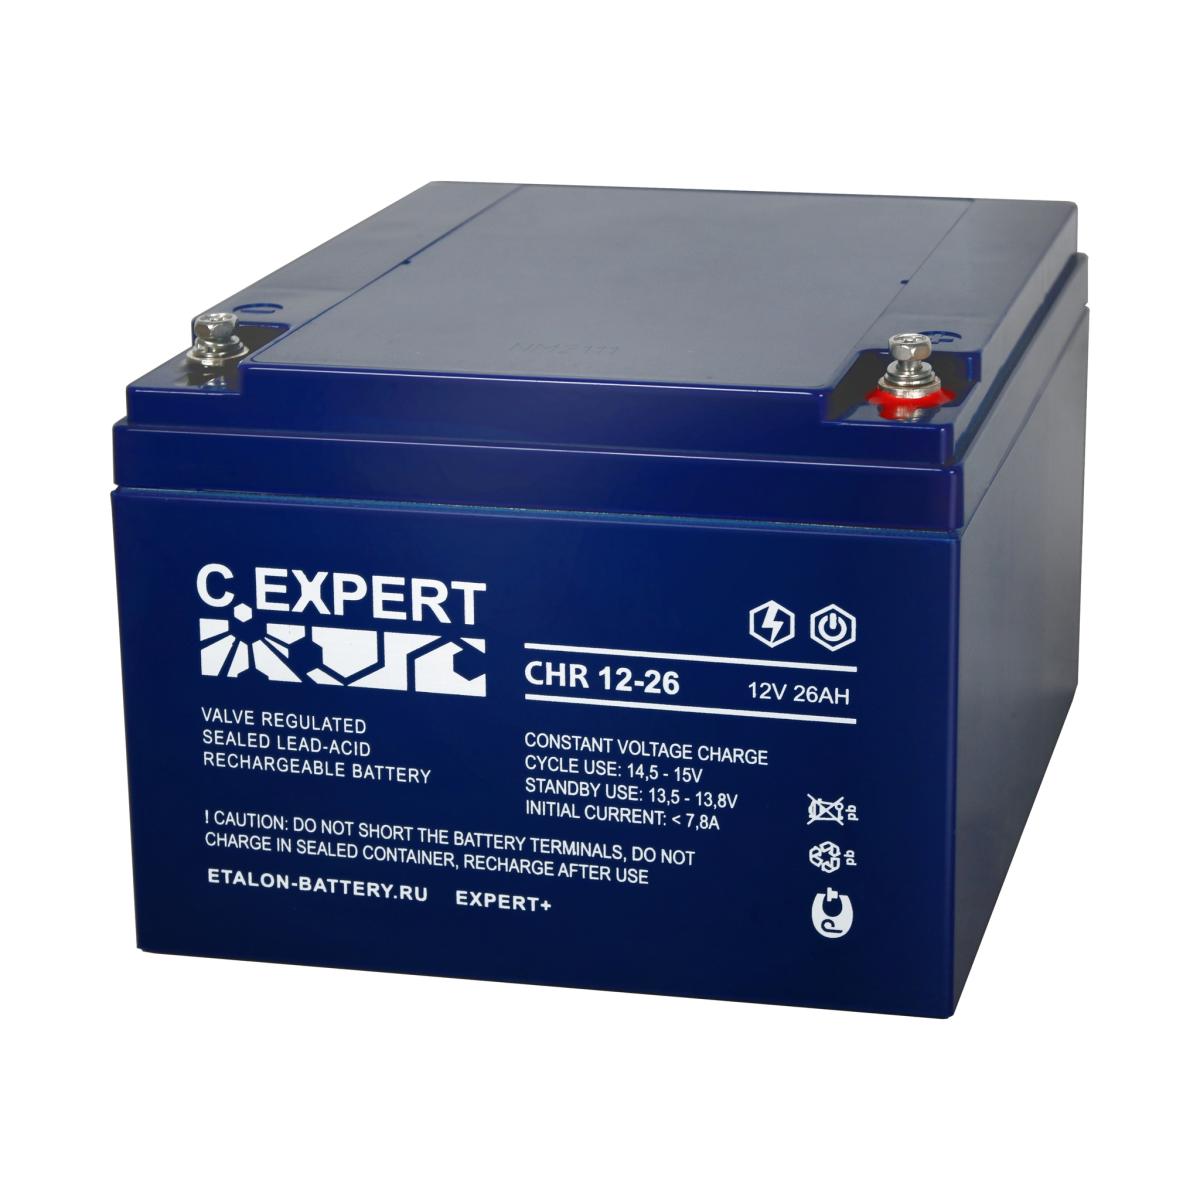 EXPERT CHR 12-26 Аккумулятор герметичный свинцово-кислотный